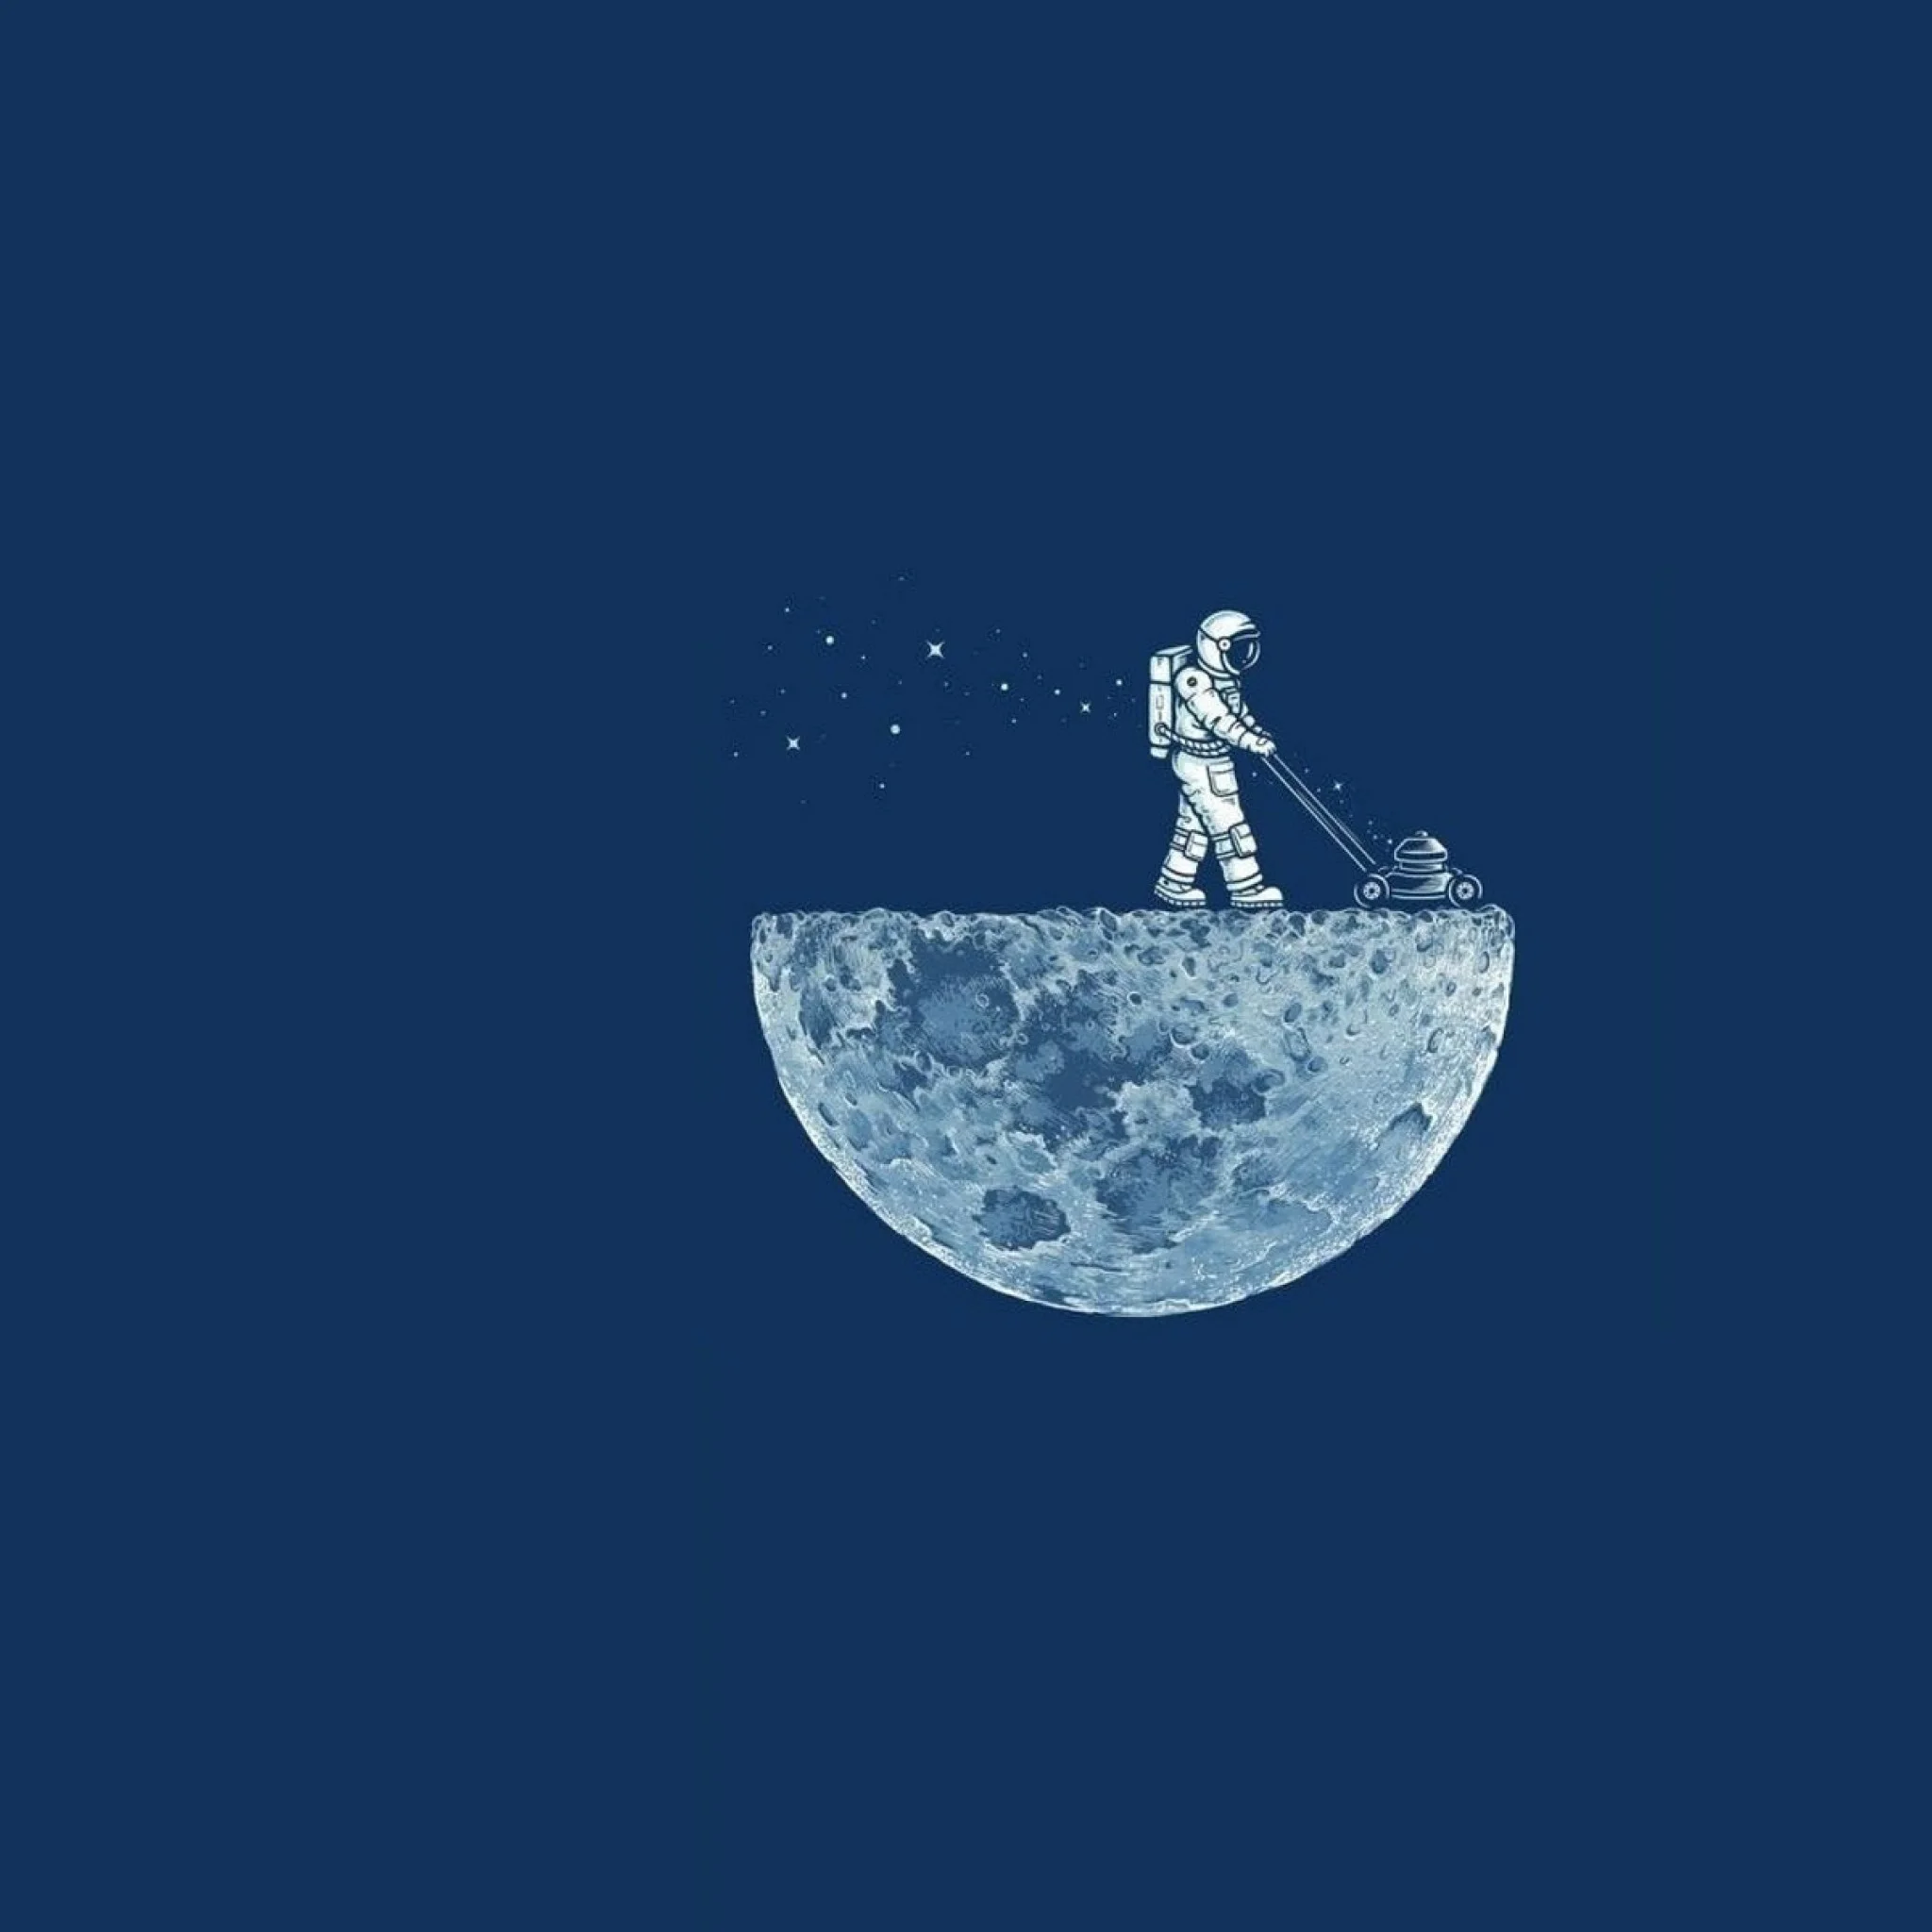 Astronaut Mowing the Moon iPad Wallpaper HD #iPad #wallpaper